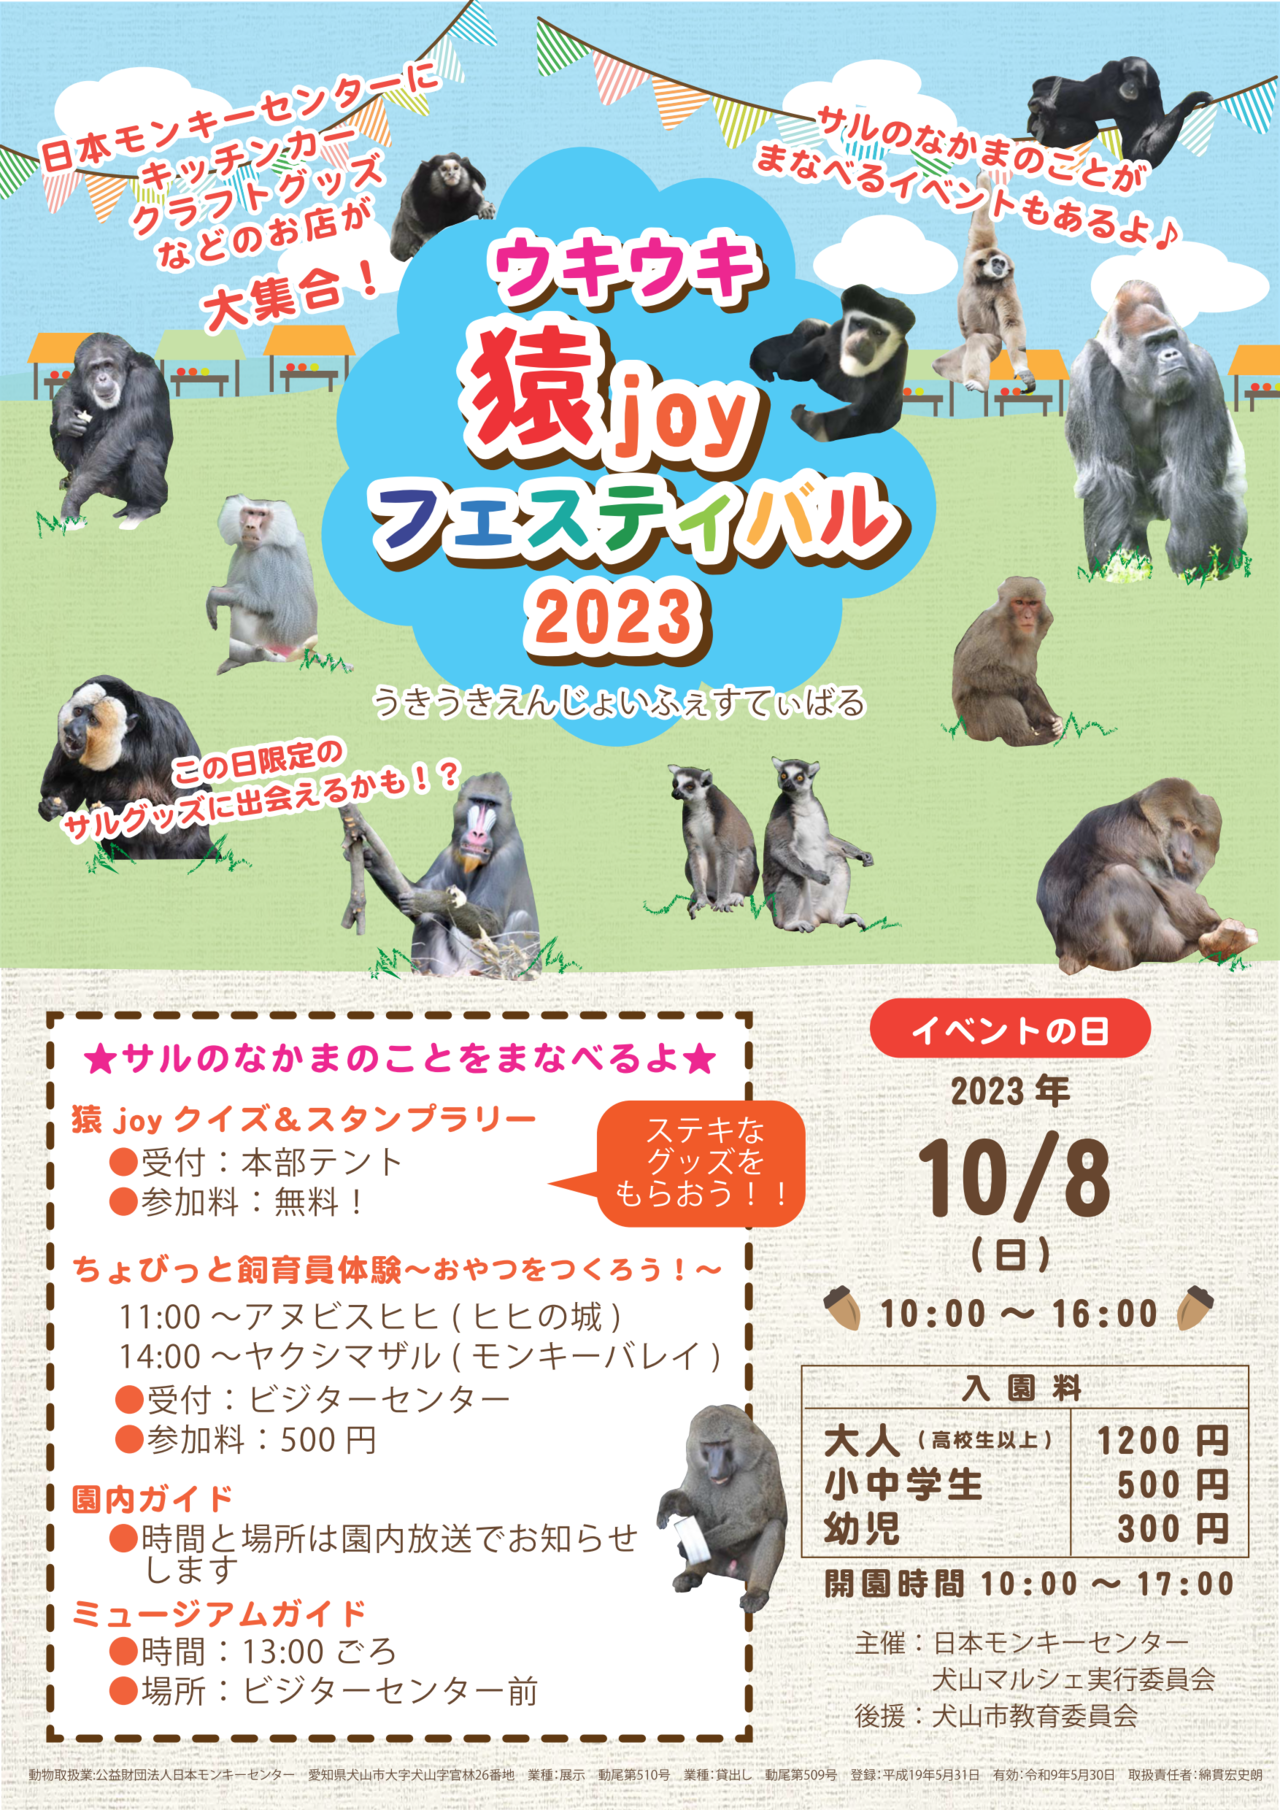 ウキウキ猿joyフェスティバル